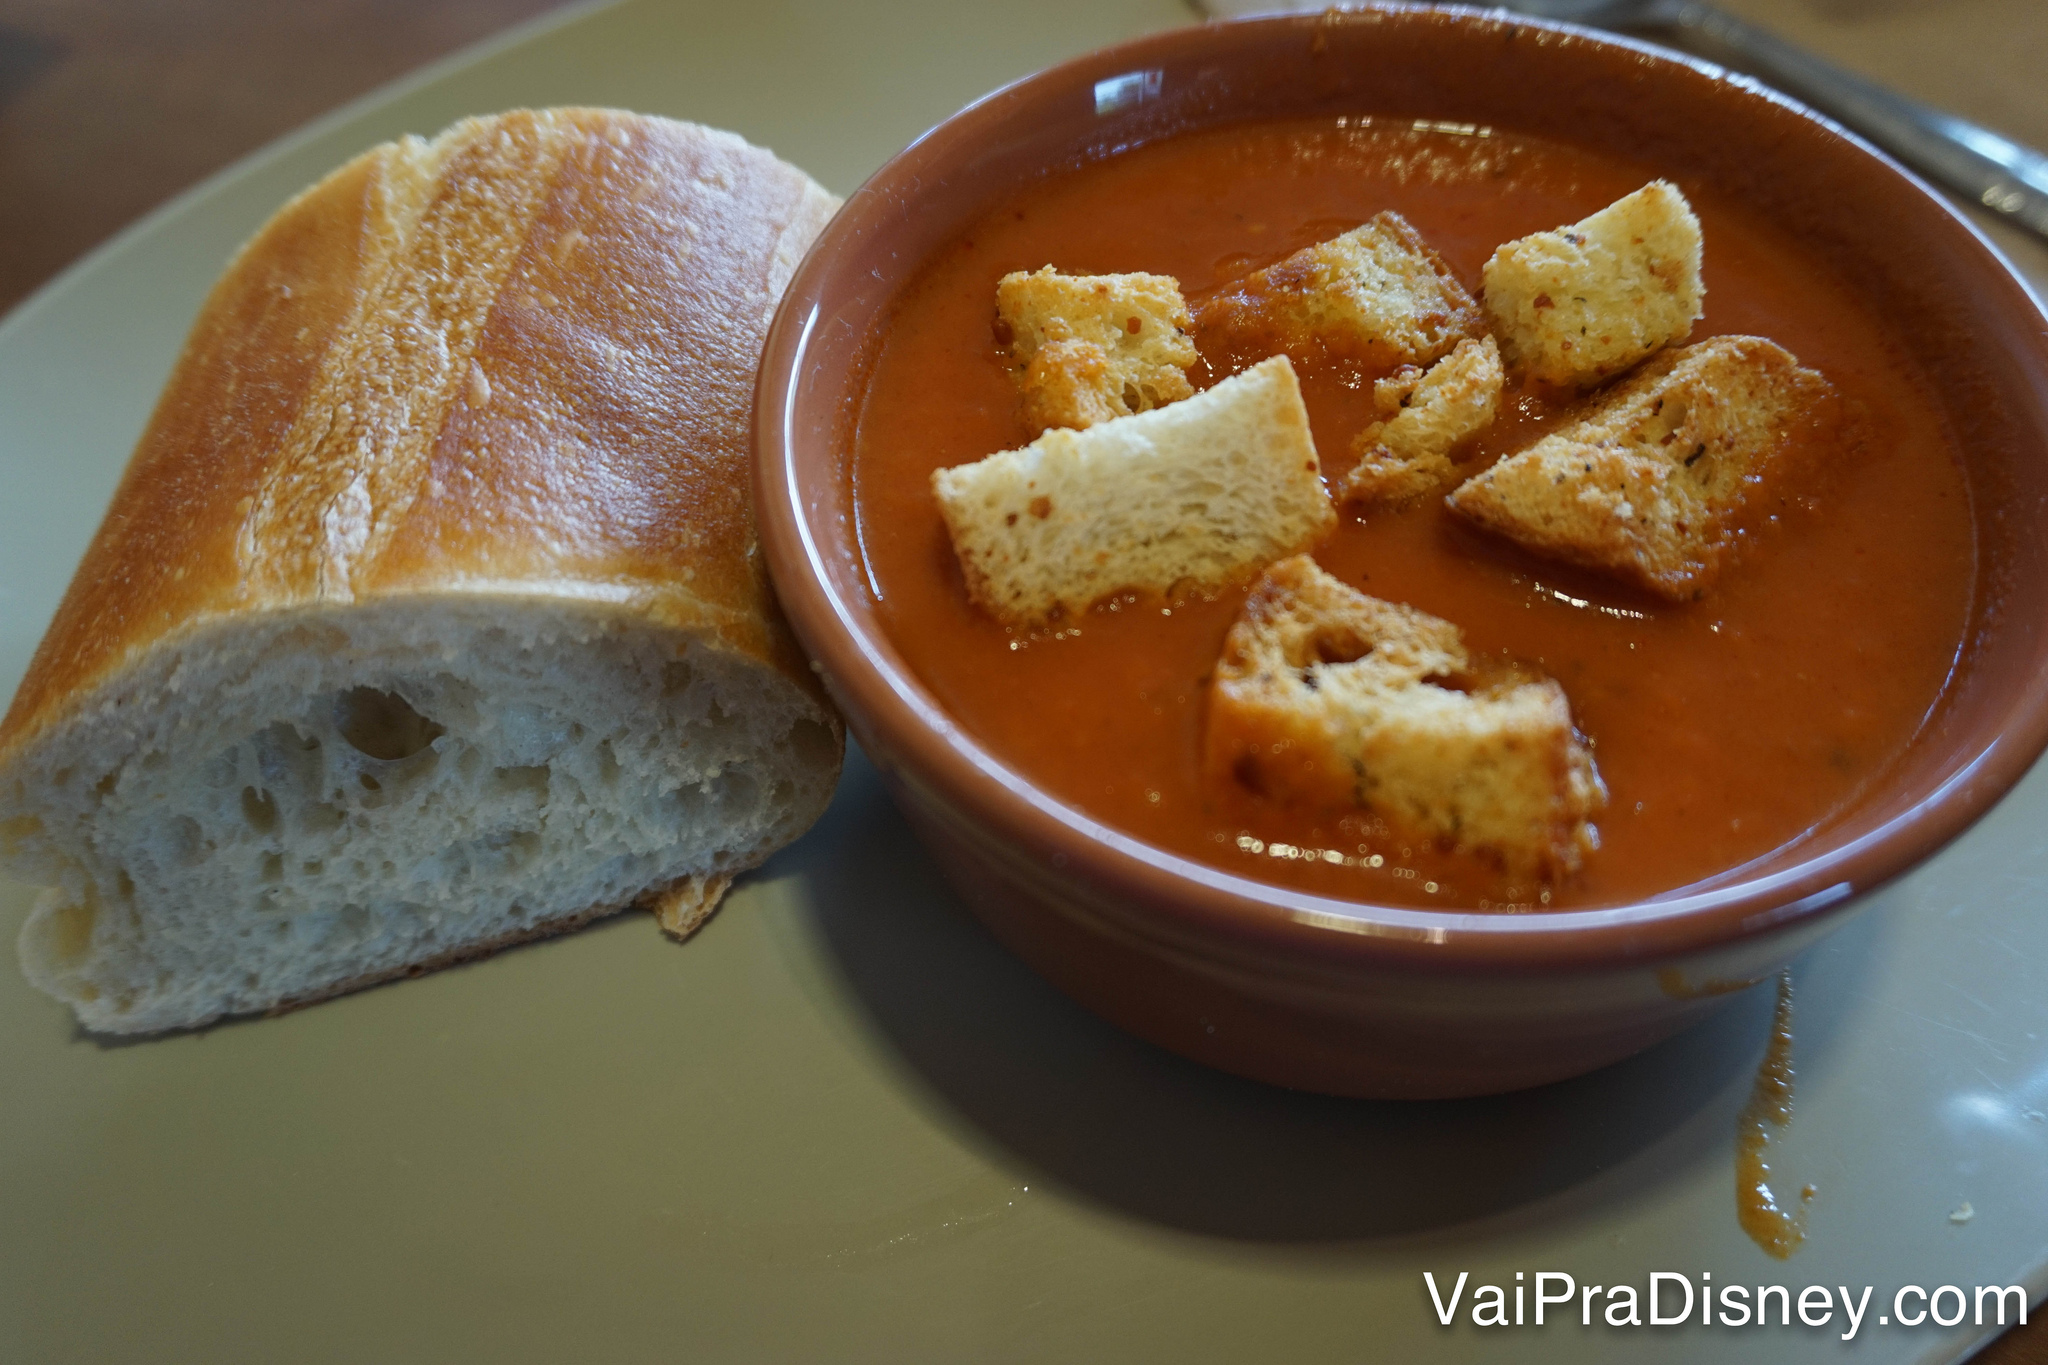 Sopa de tomate com croutons acompanhada de um pedaço da baguete de pão francês